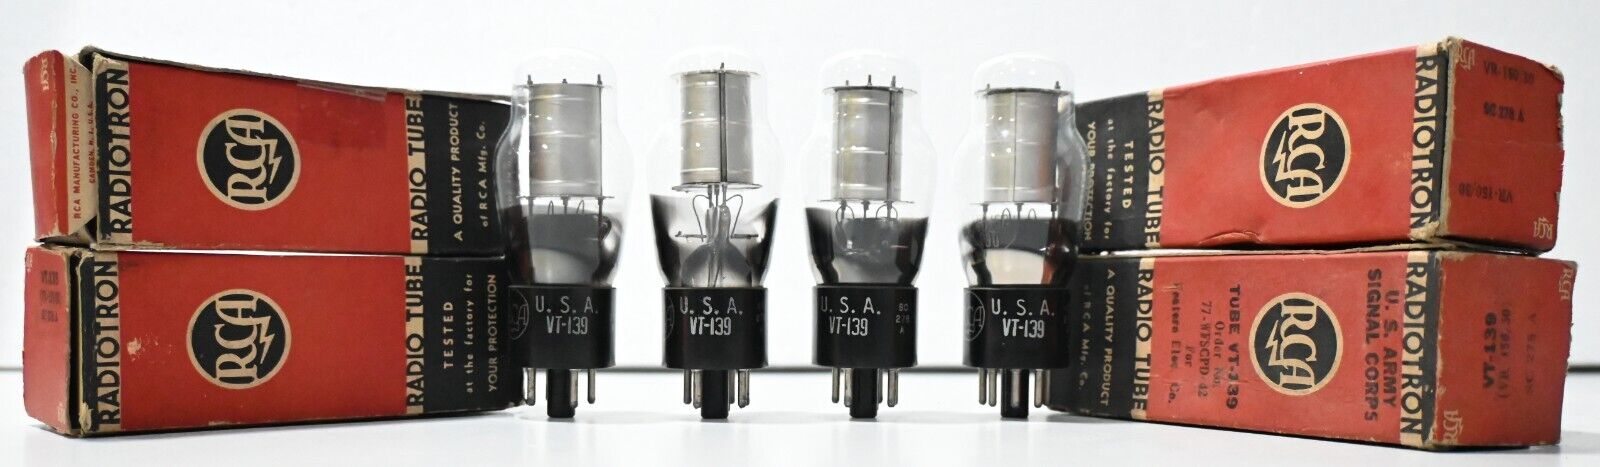 NOS VT139 VR150 OD3 RCA Black Base voltage regulator Tube Made In U.S.A 4 Pcs